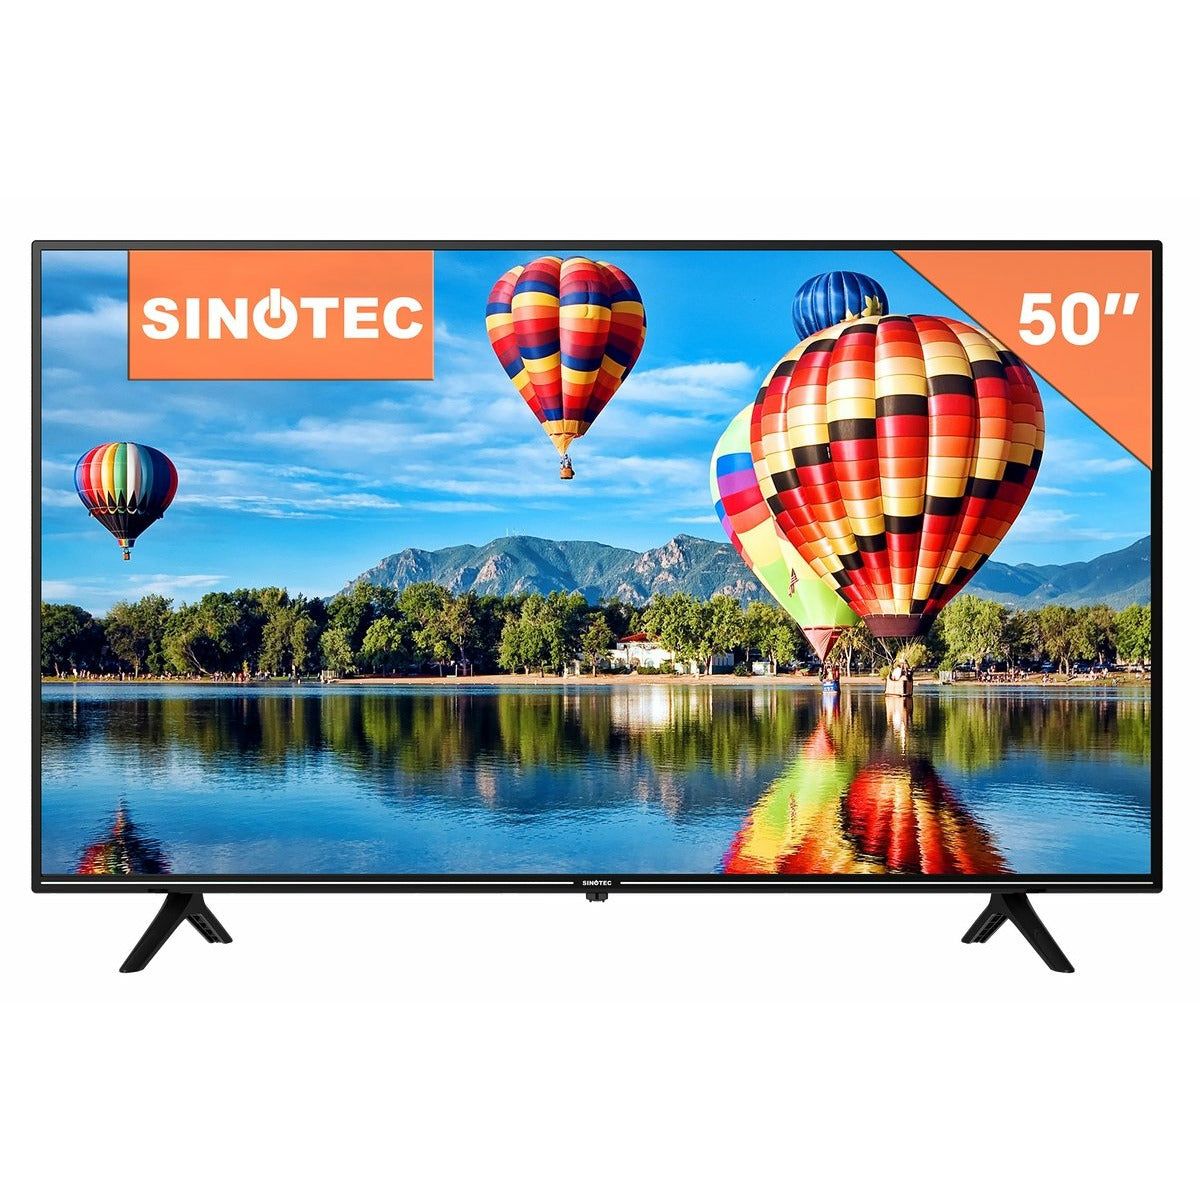 Sinotec STL-50U20AT UHD Smart TV - 50" - New World